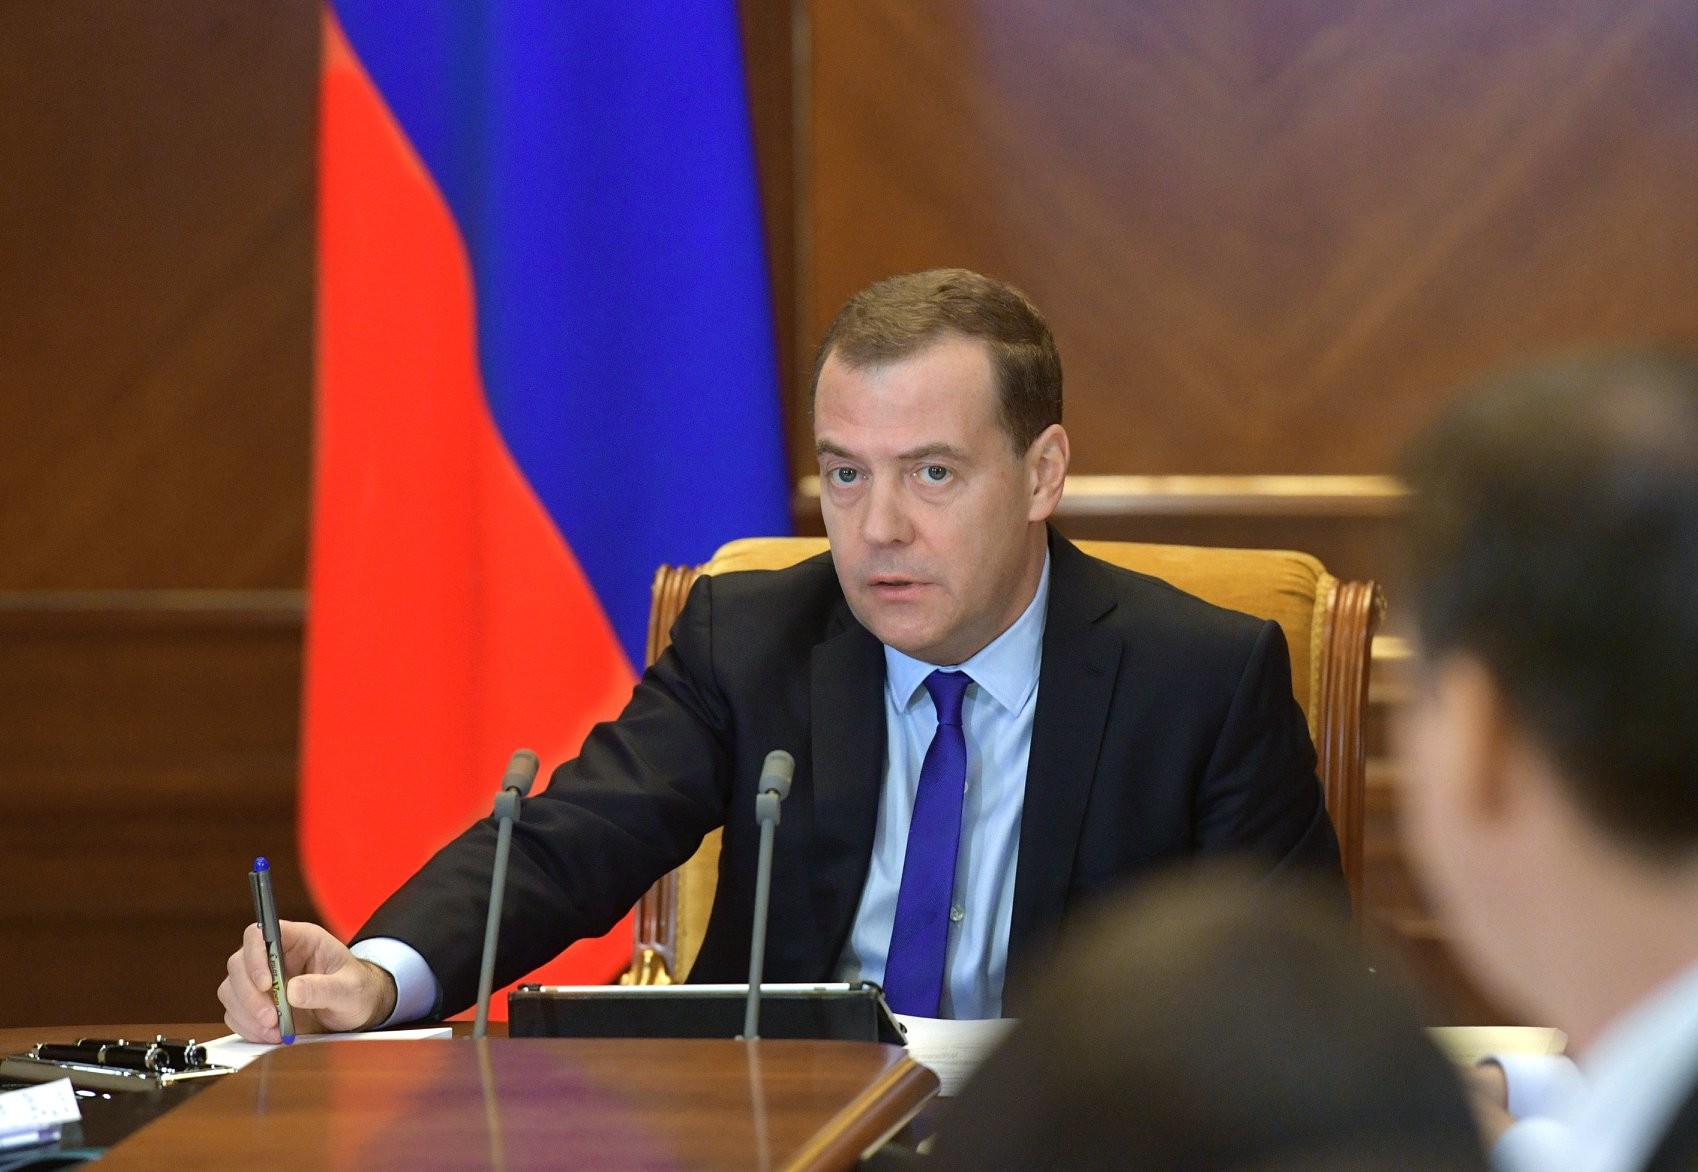 Дмитрий Медведев. Фото: © VK/ Дмитрий Медведев
